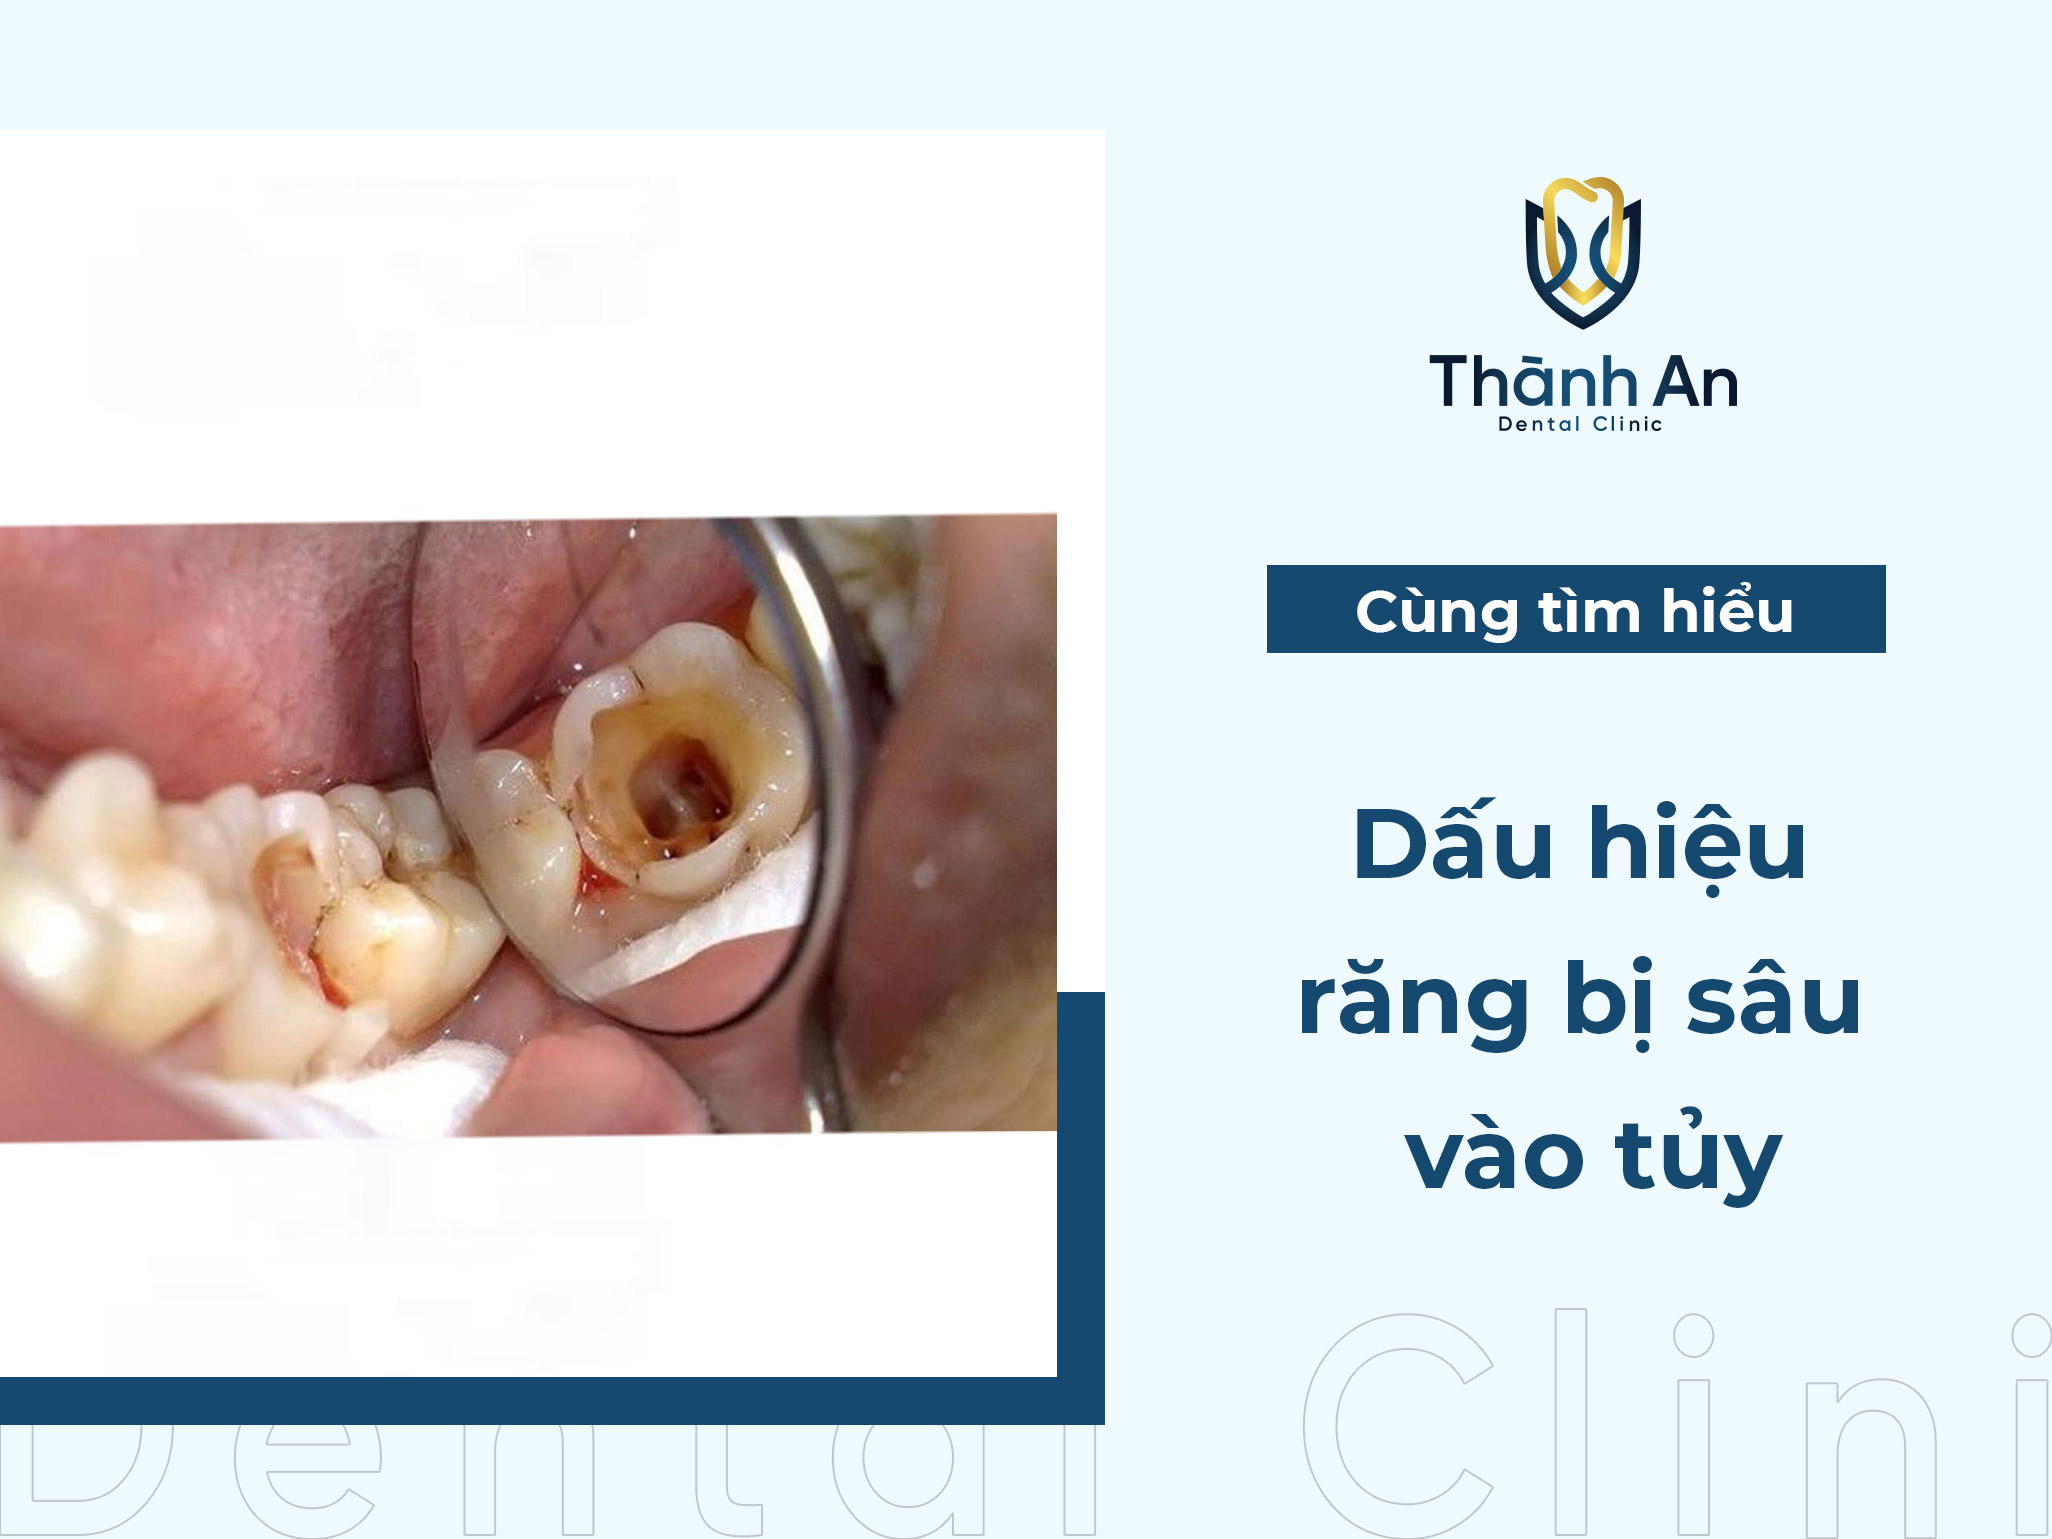 Nhận biết dấu hiệu răng bị sâu vào tủy và cách điều trị hiệu quả 